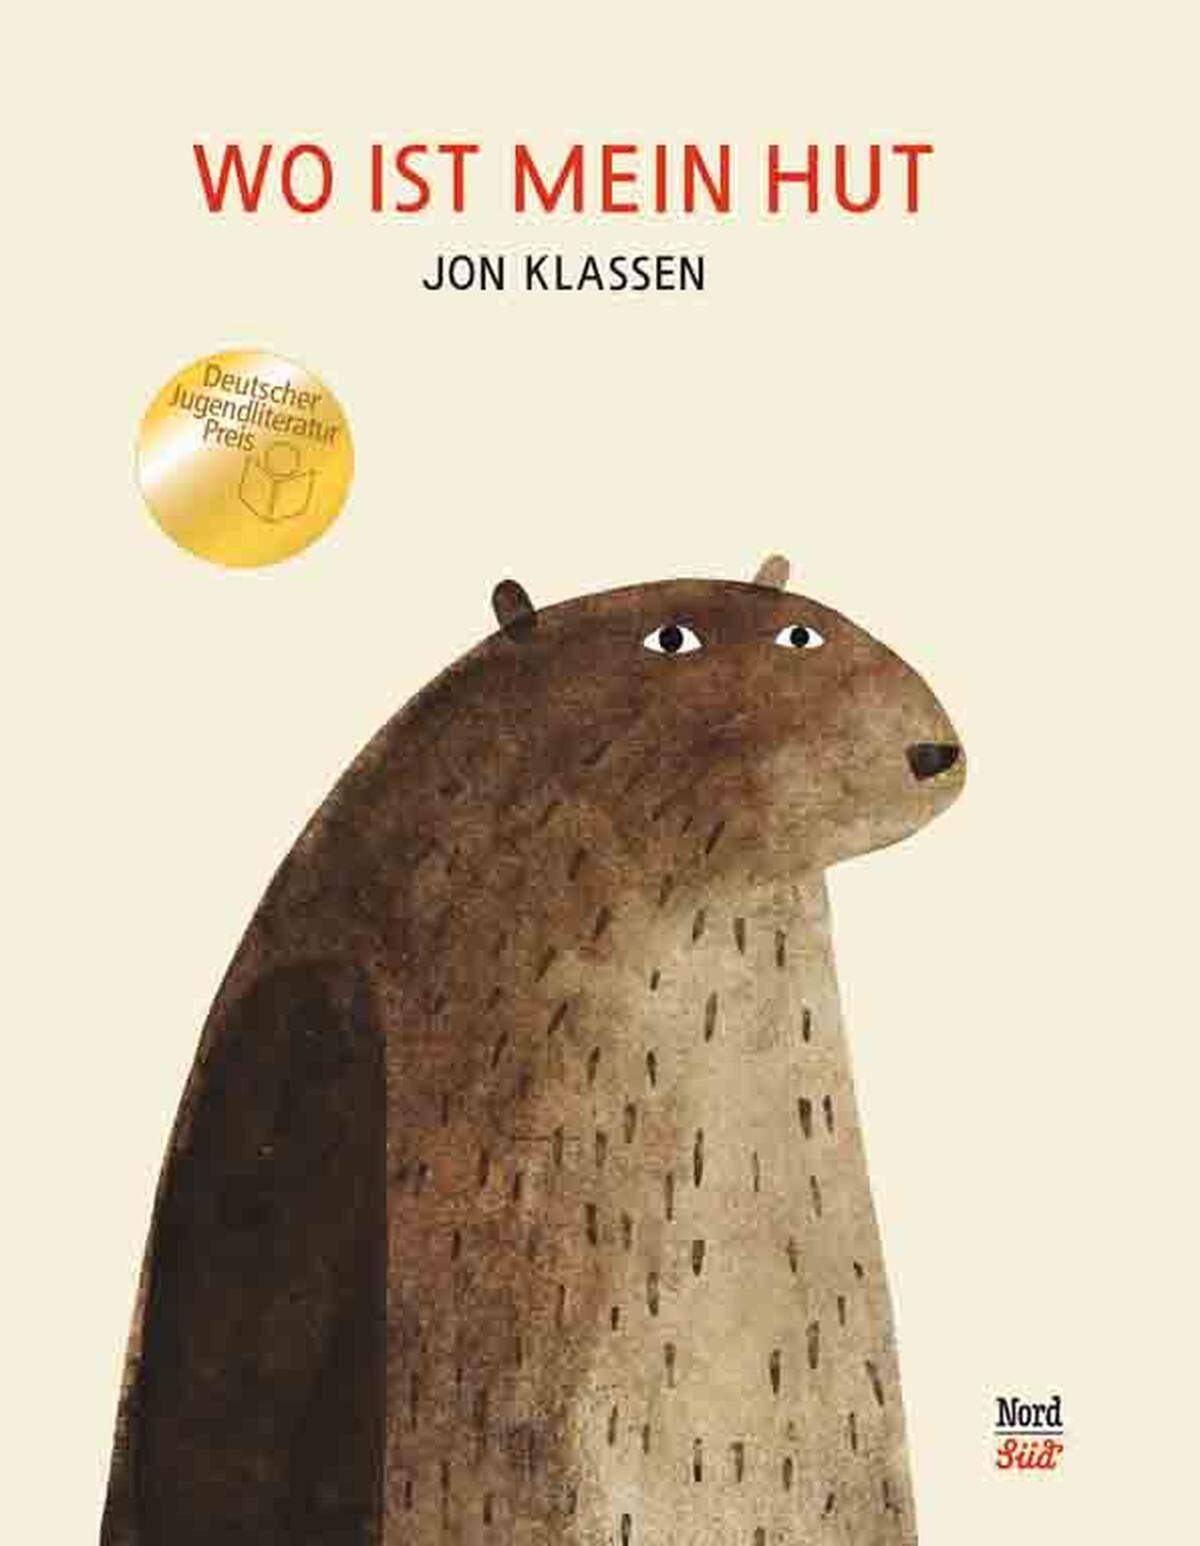 Den deutschen Jugend-Literaturpreis hat 2013 der geniale Jon Klassen für ein mehr als würdiges Büchlein erhalten. In "Wo ist mein Hut" wandert der nicht ganz helle, aber durchwegs brave Bär mit ebenjener Frage von Tier zu Tier. Er ist ein Held, der gefällt: Mittlerweile gibt es schon einen Internet-Hype um ihn. Am Ende des Buches, so viel sei verraten, ist zwar der Hut wieder da, das Kaninchen allerdings weg. Und die großen Fragen der Moral muss jeder für sich beantworten. Alter: Ab vier Jahren.